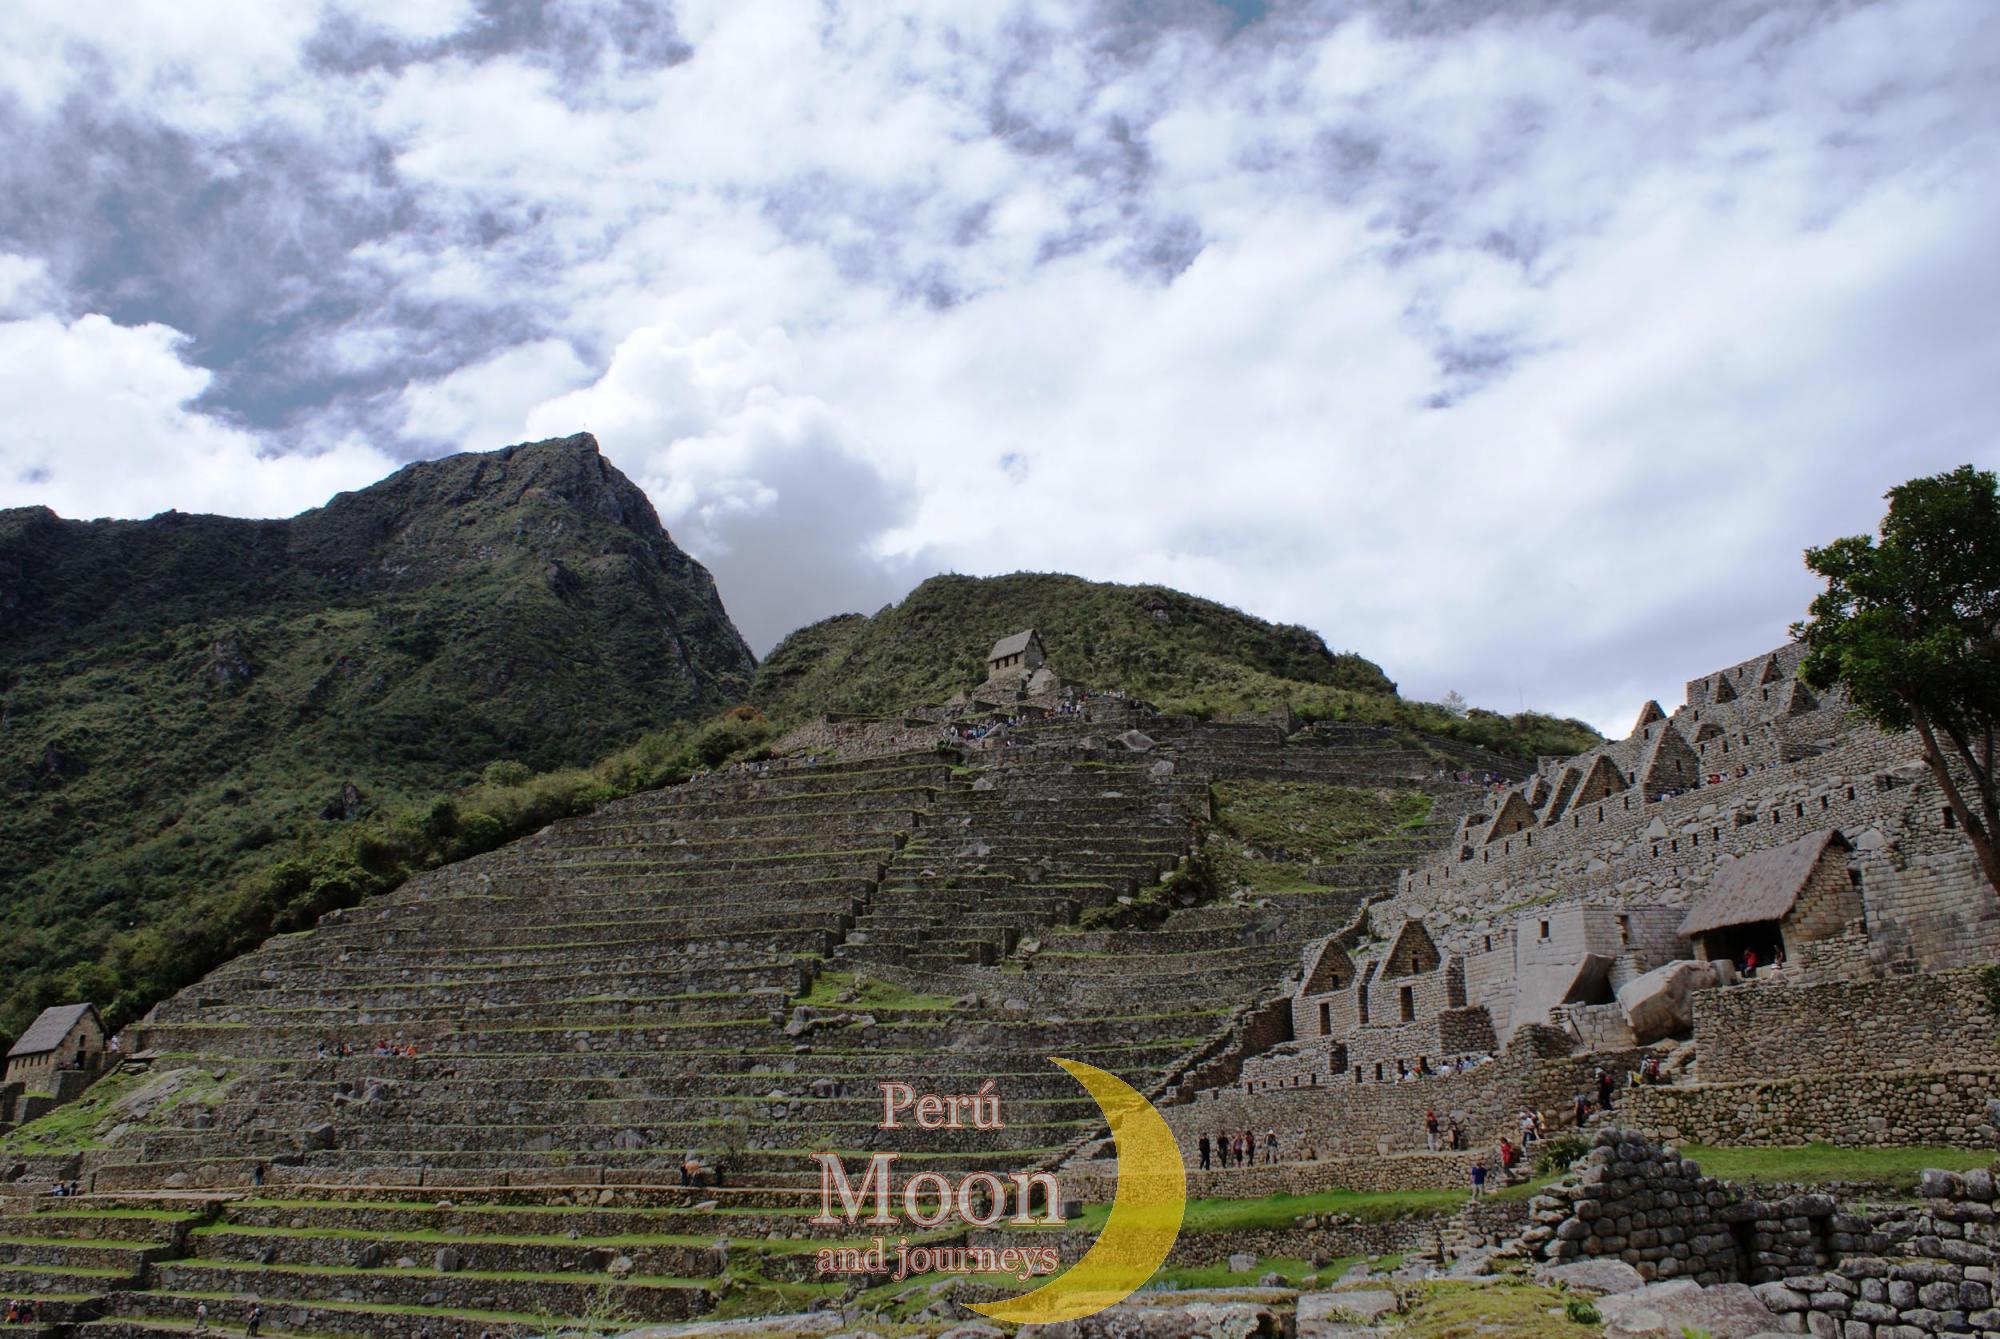 Inca Citadel of Machu Picchu